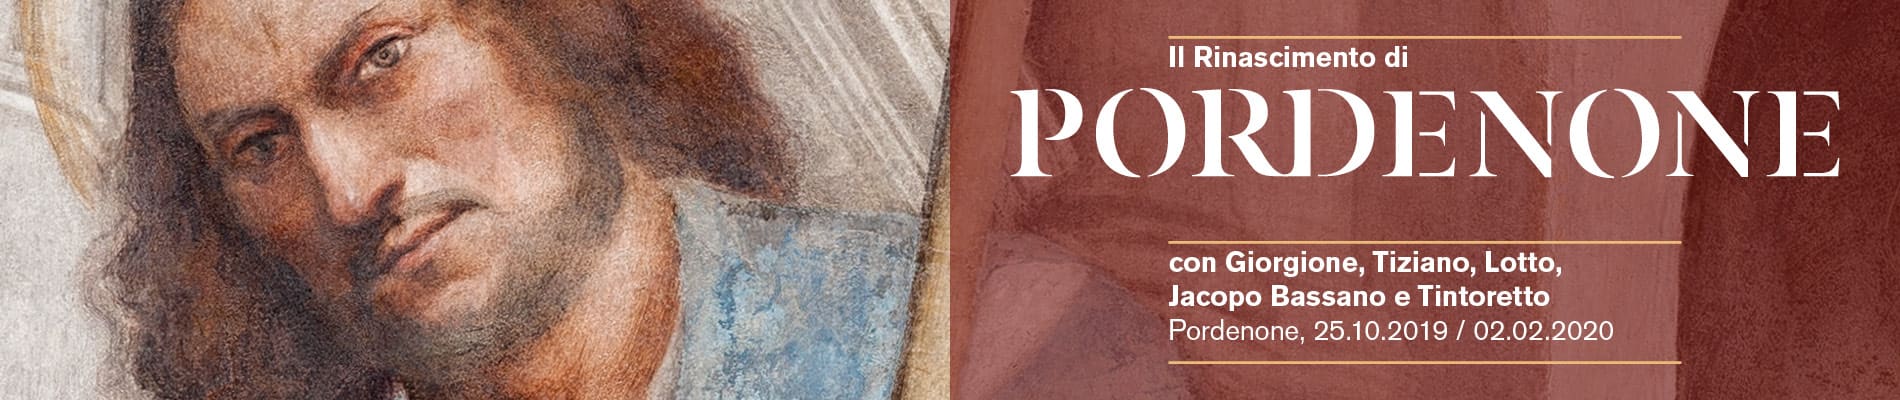 Il Rinascimento di Pordenone. Con Giorgione Tiziano Lotto Jacopo Bassano Tintoretto